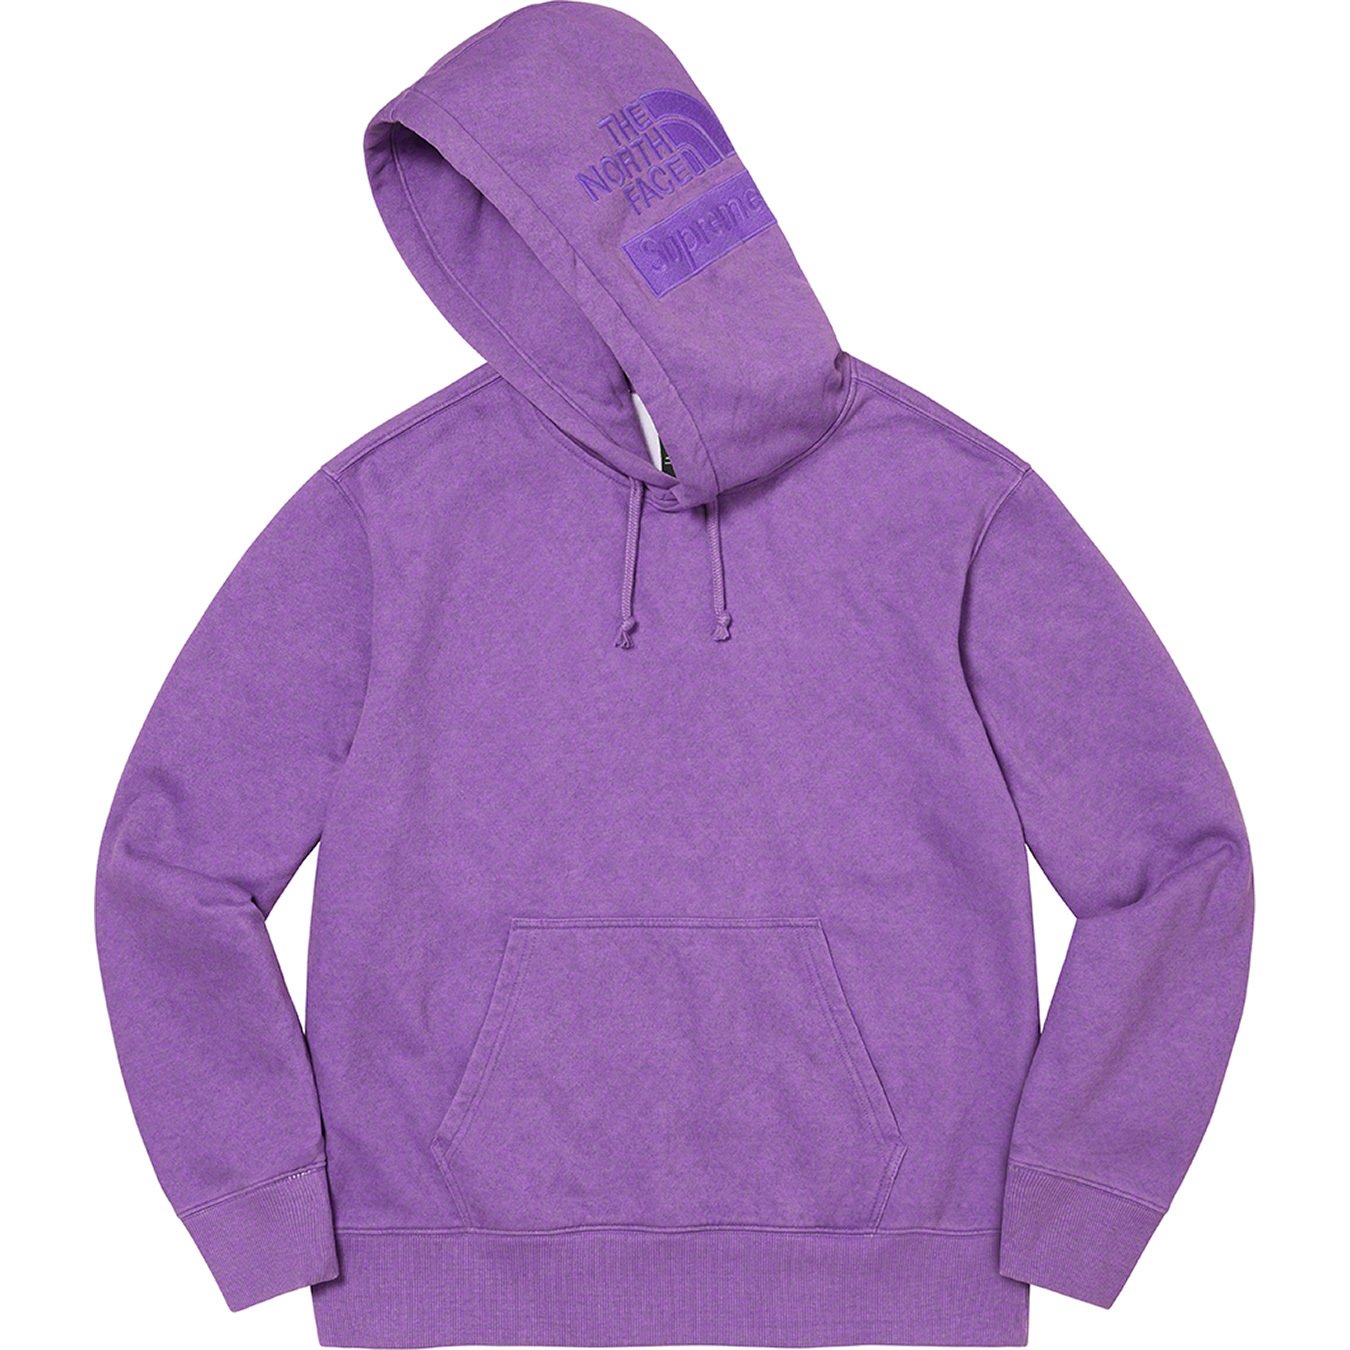 Pigment Printed Hooded Sweatshirt XL-